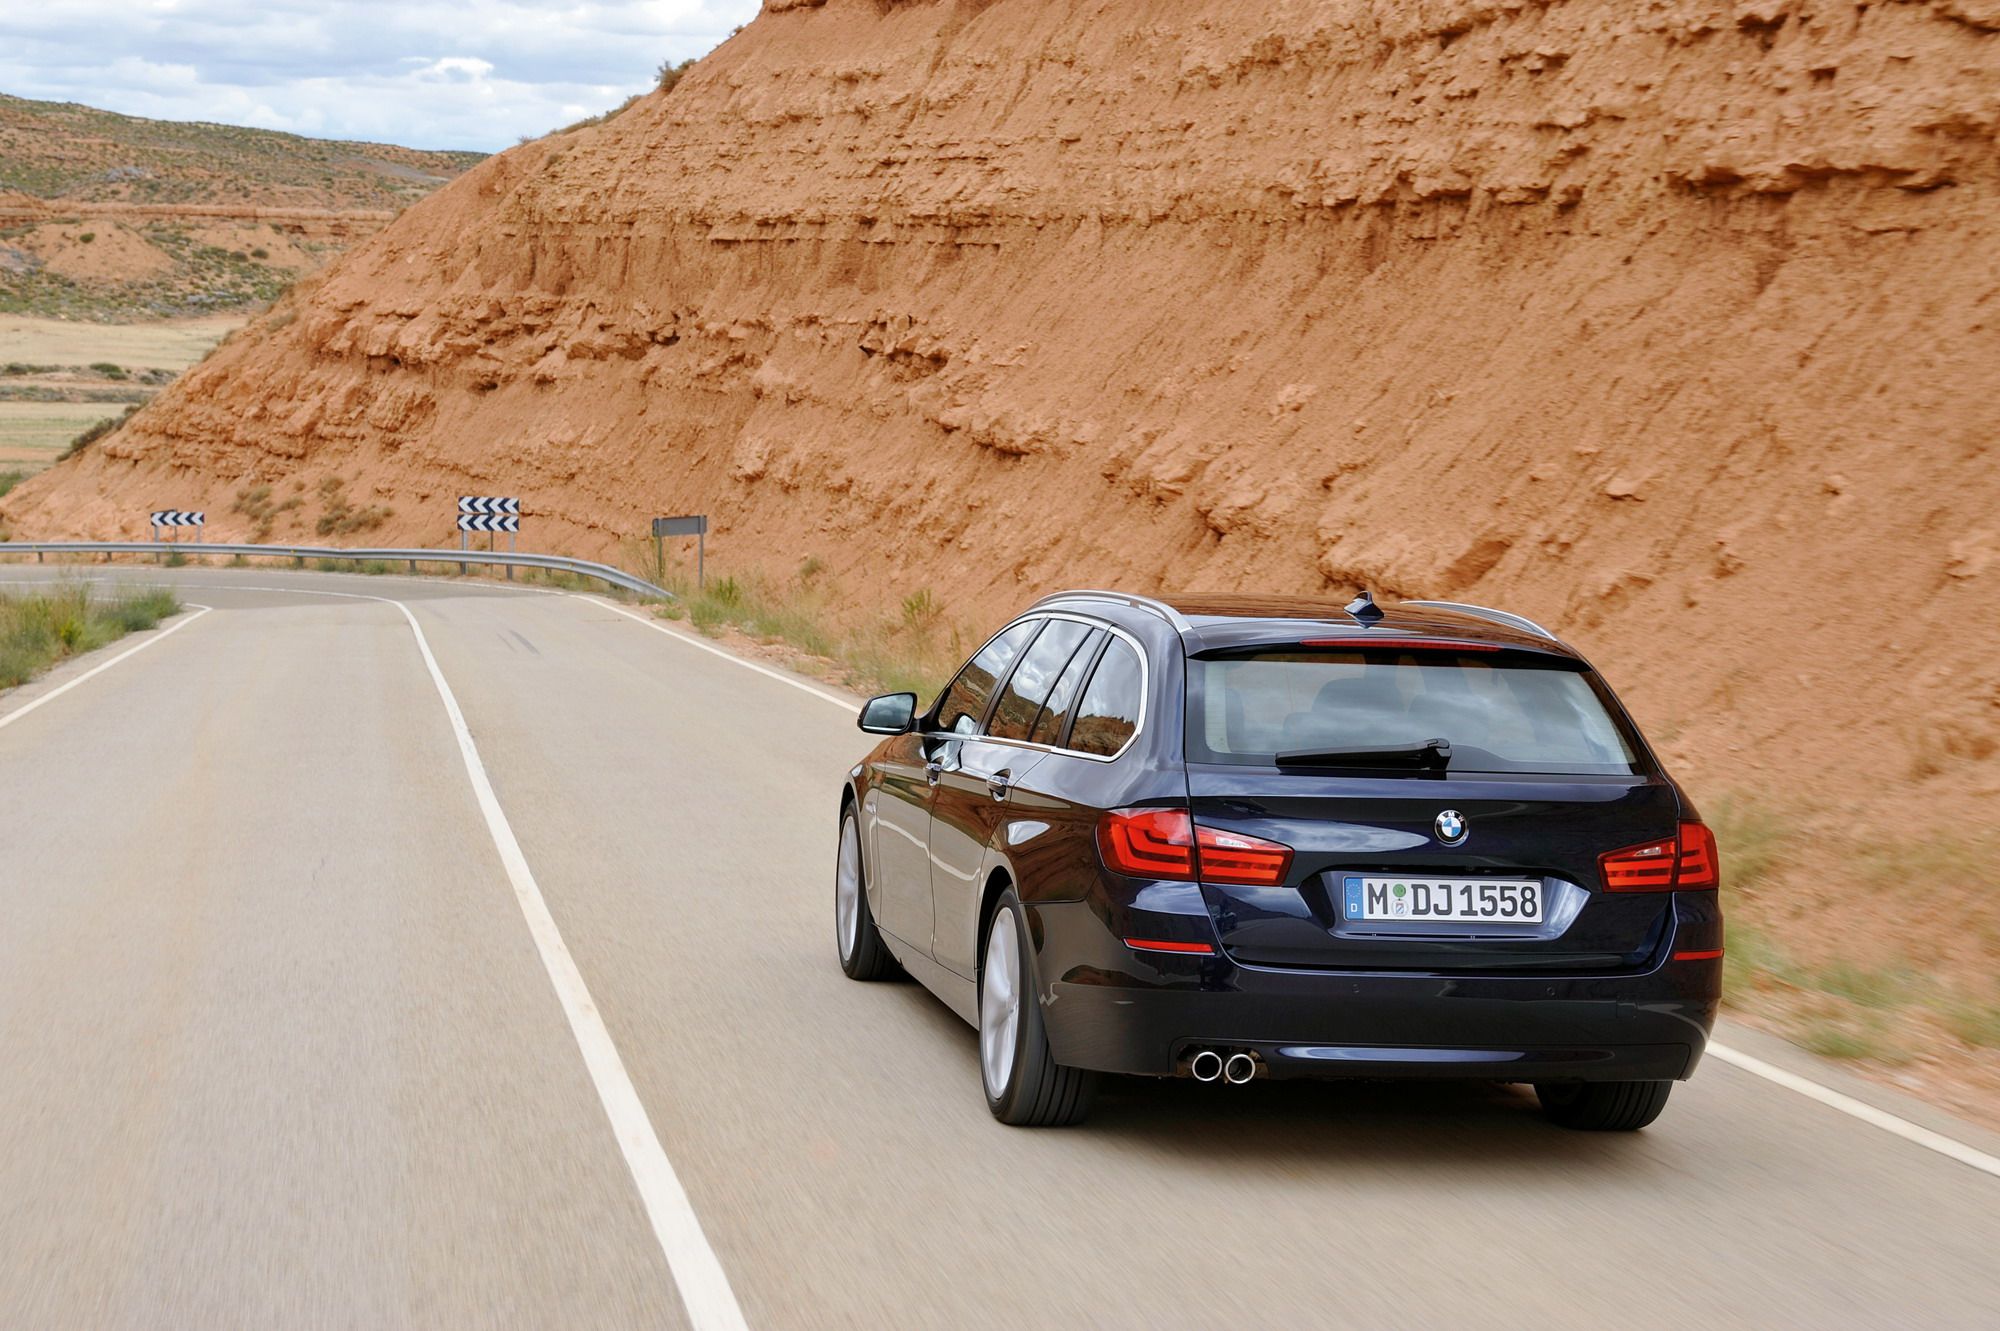 2011 BMW 5-Series Touring